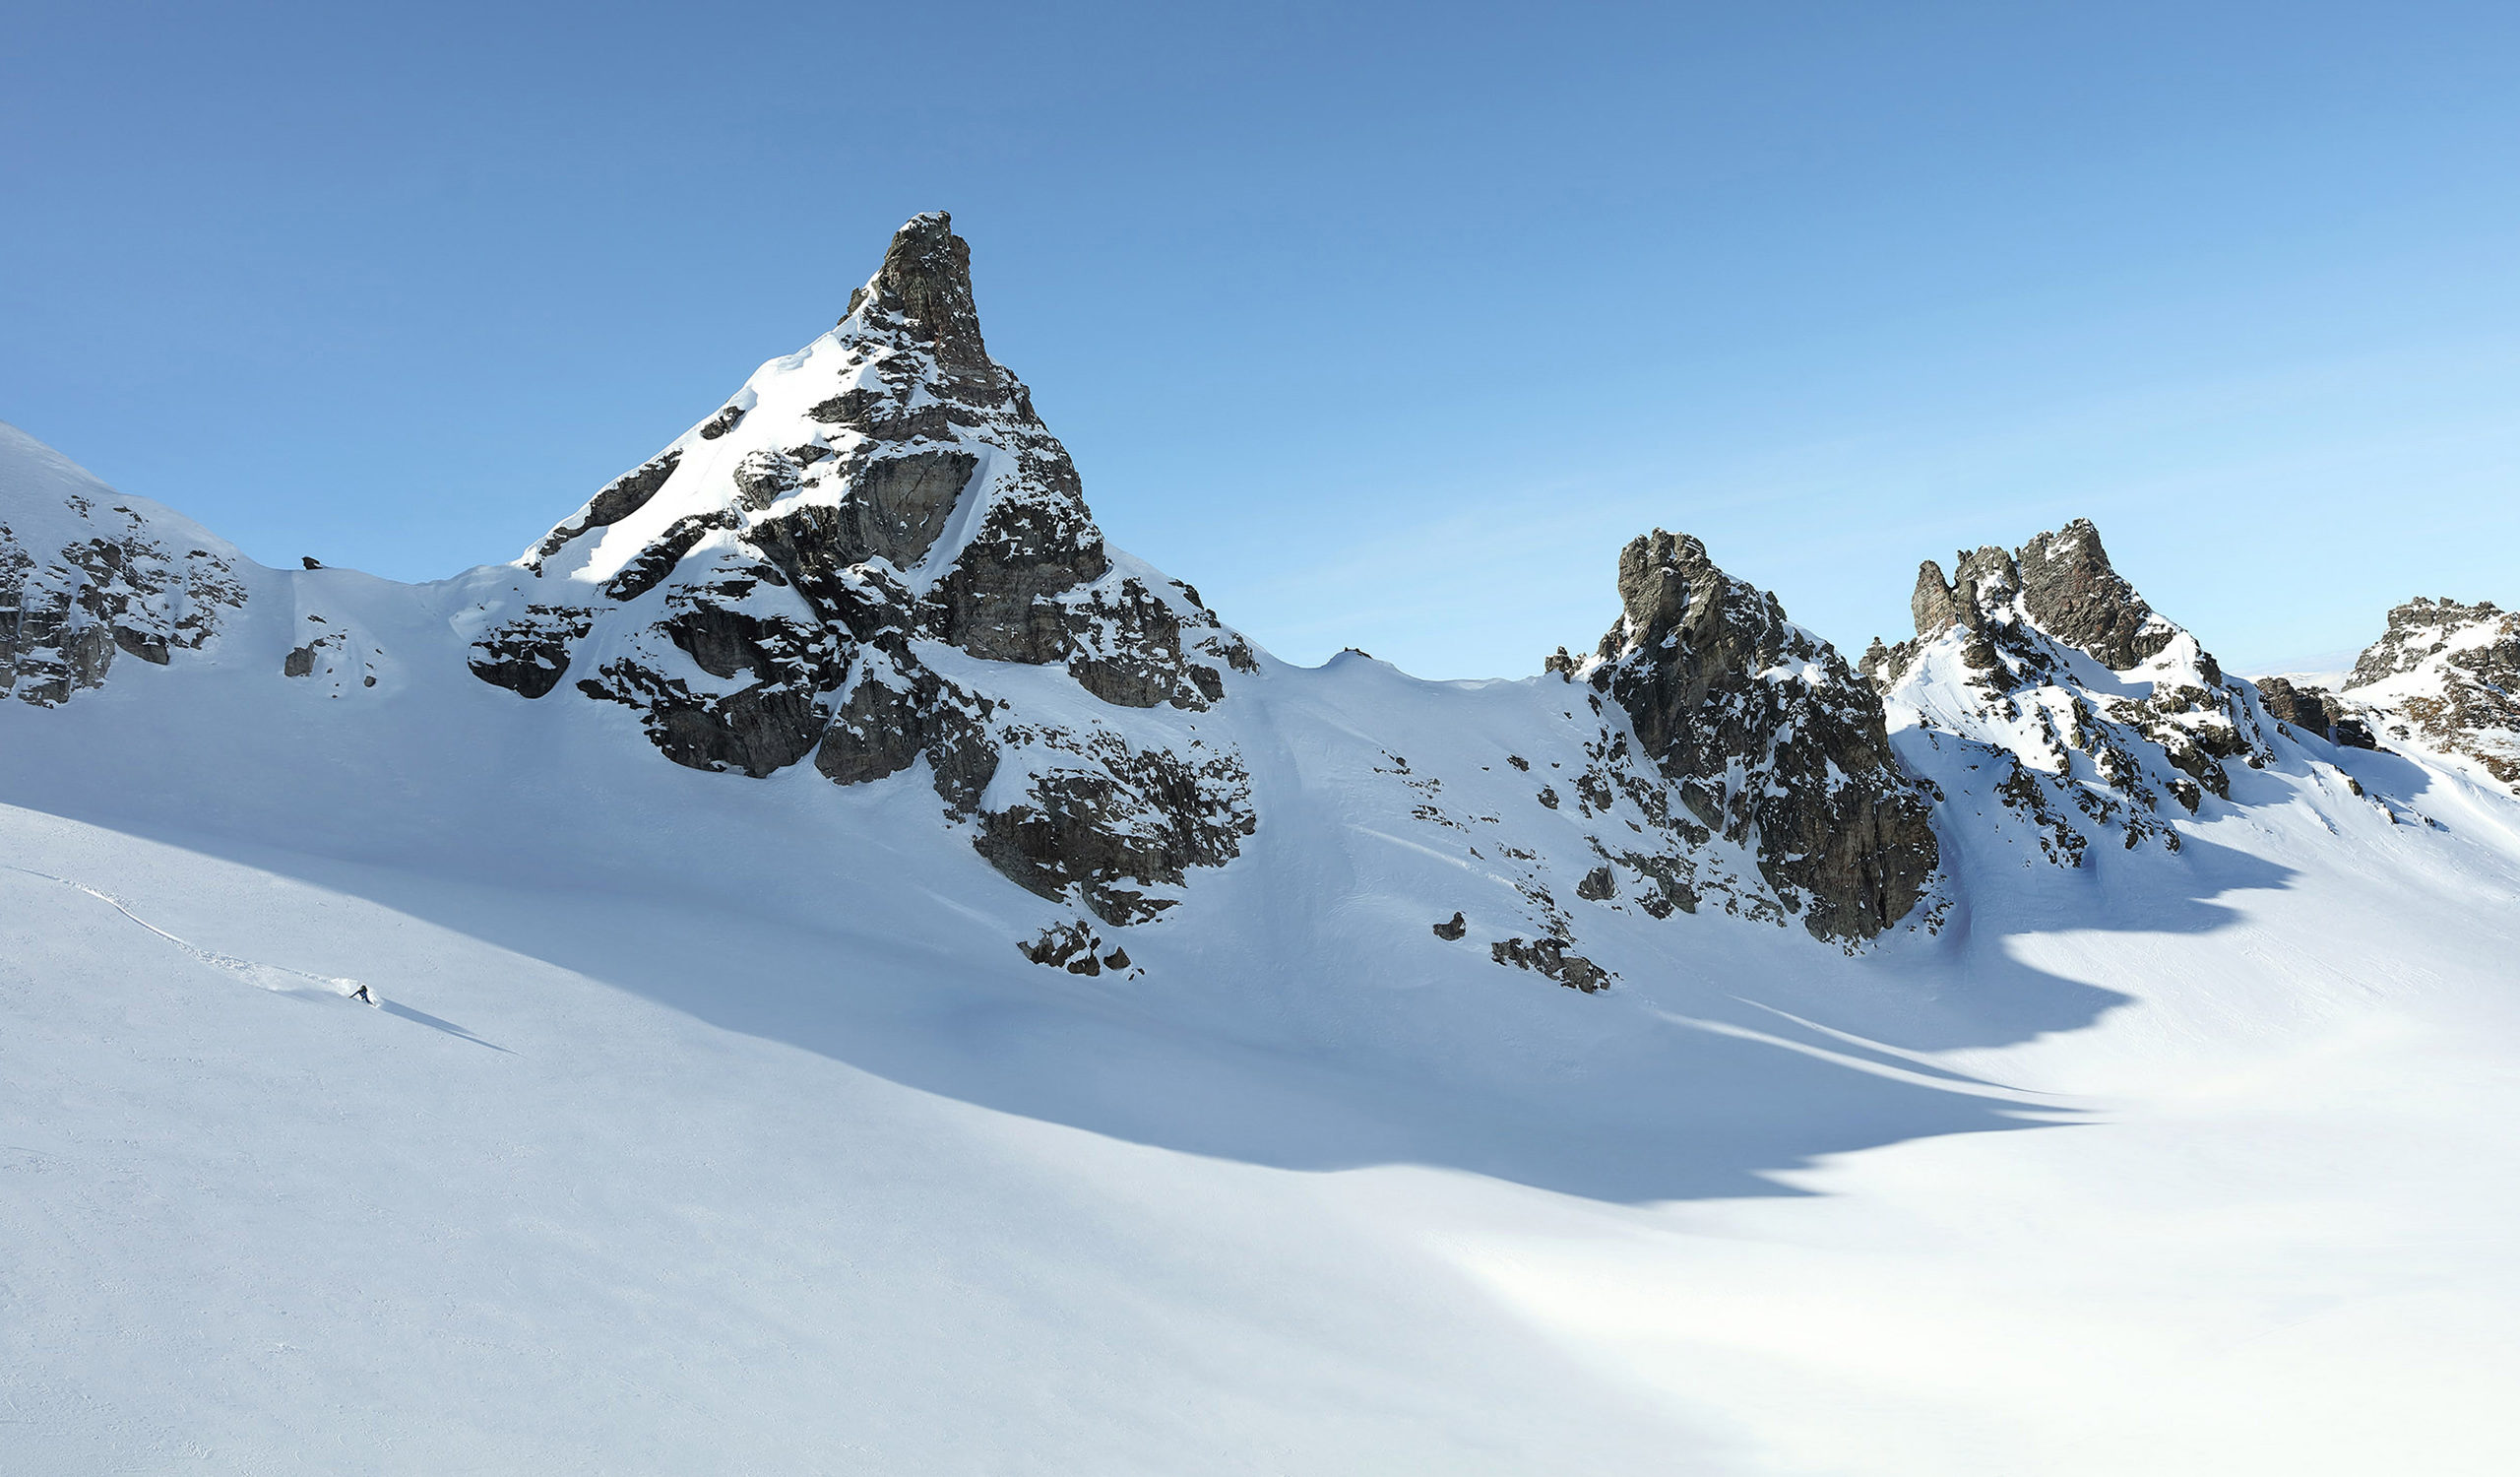 Reiten im Pulverschnee an einem schönen Tag in den Schweizer Alpen. Freeriden ist in der Schweiz sowohl bei Snowboardern als auch bei Skifahrern beliebt.